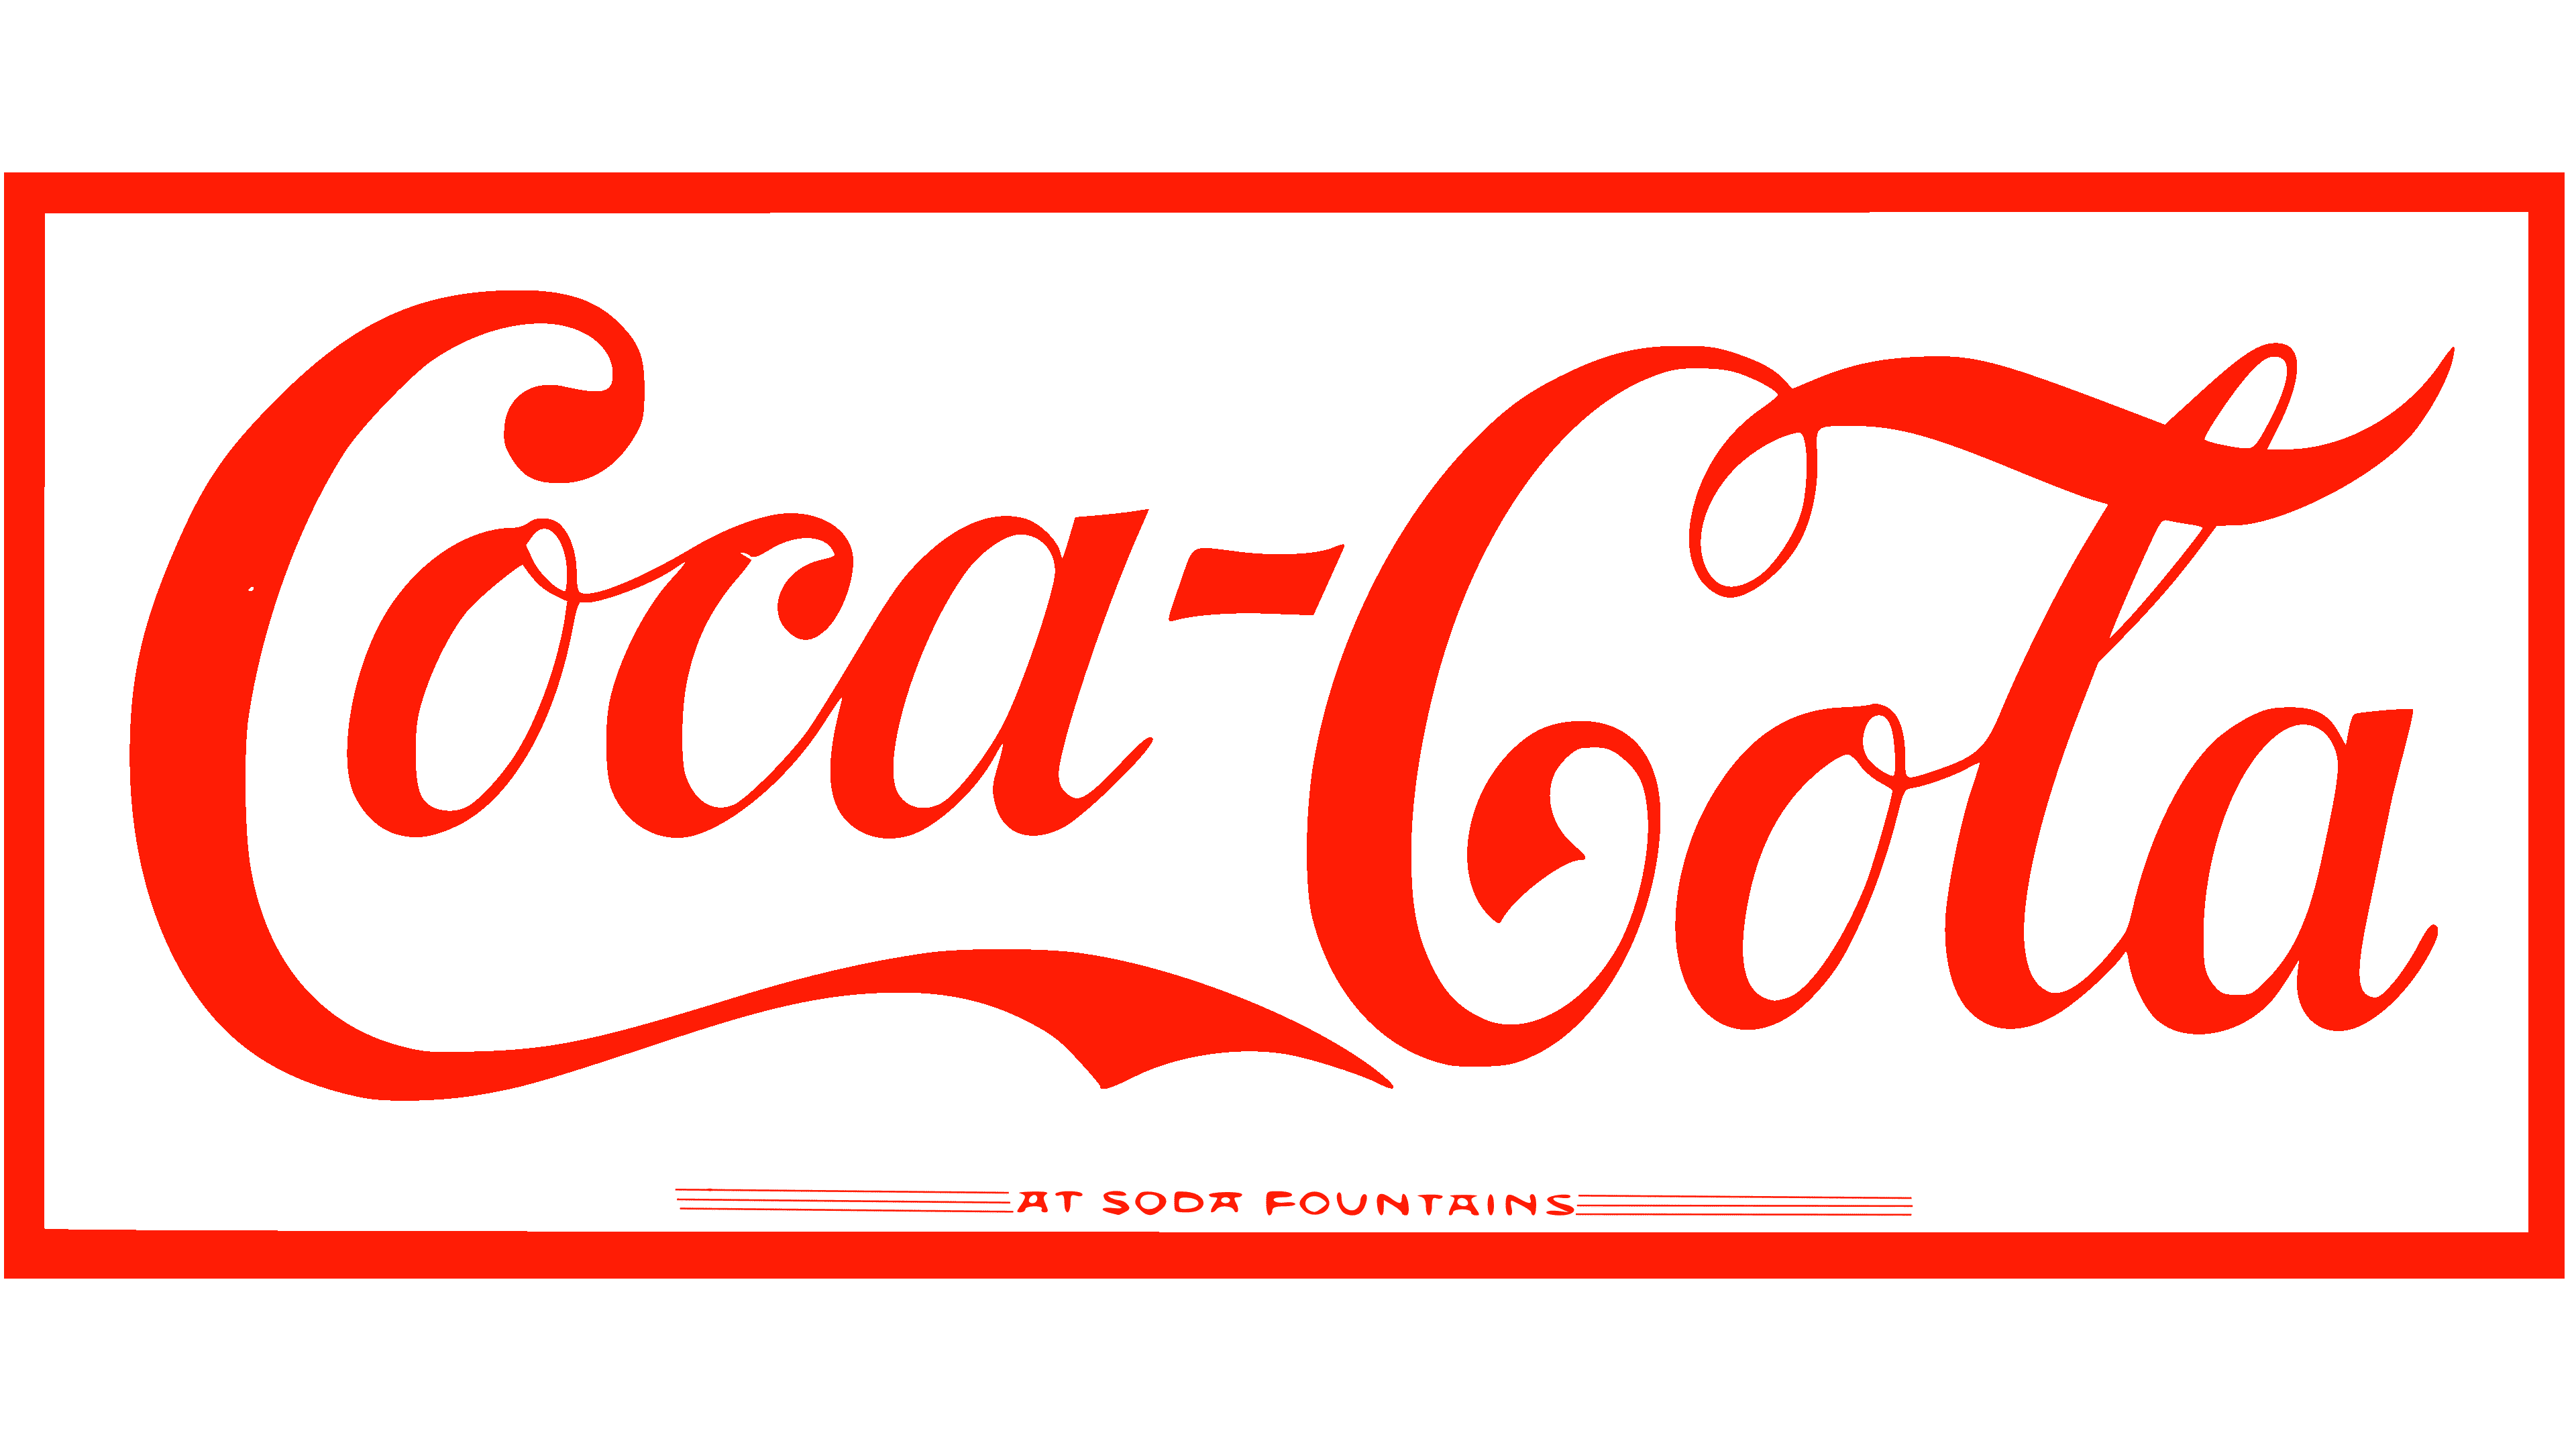 vintage coke logo